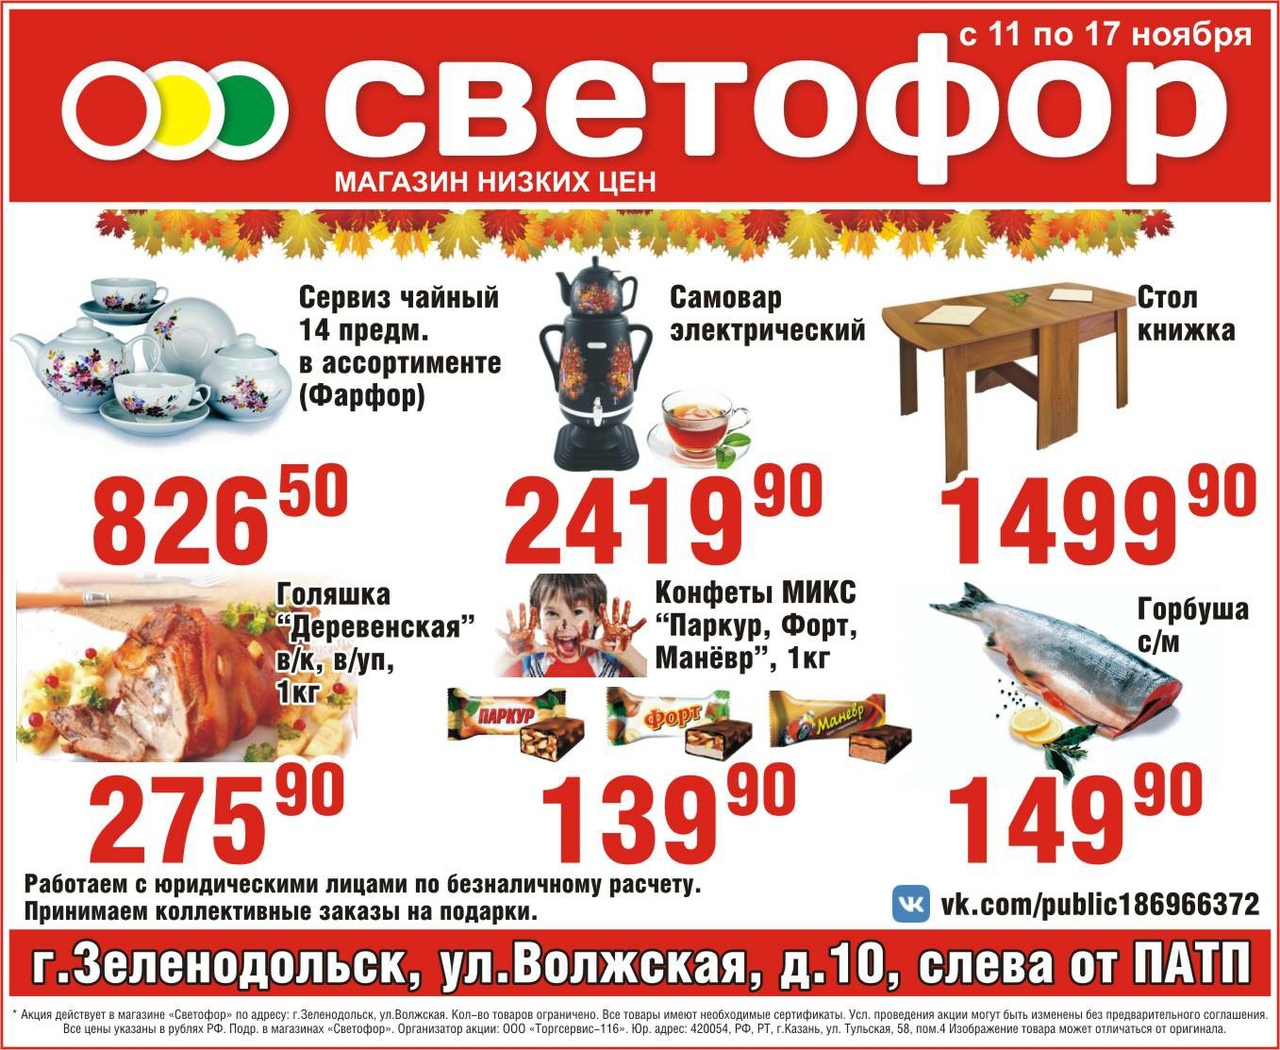 Где Купить Акции В Нижнем Новгороде